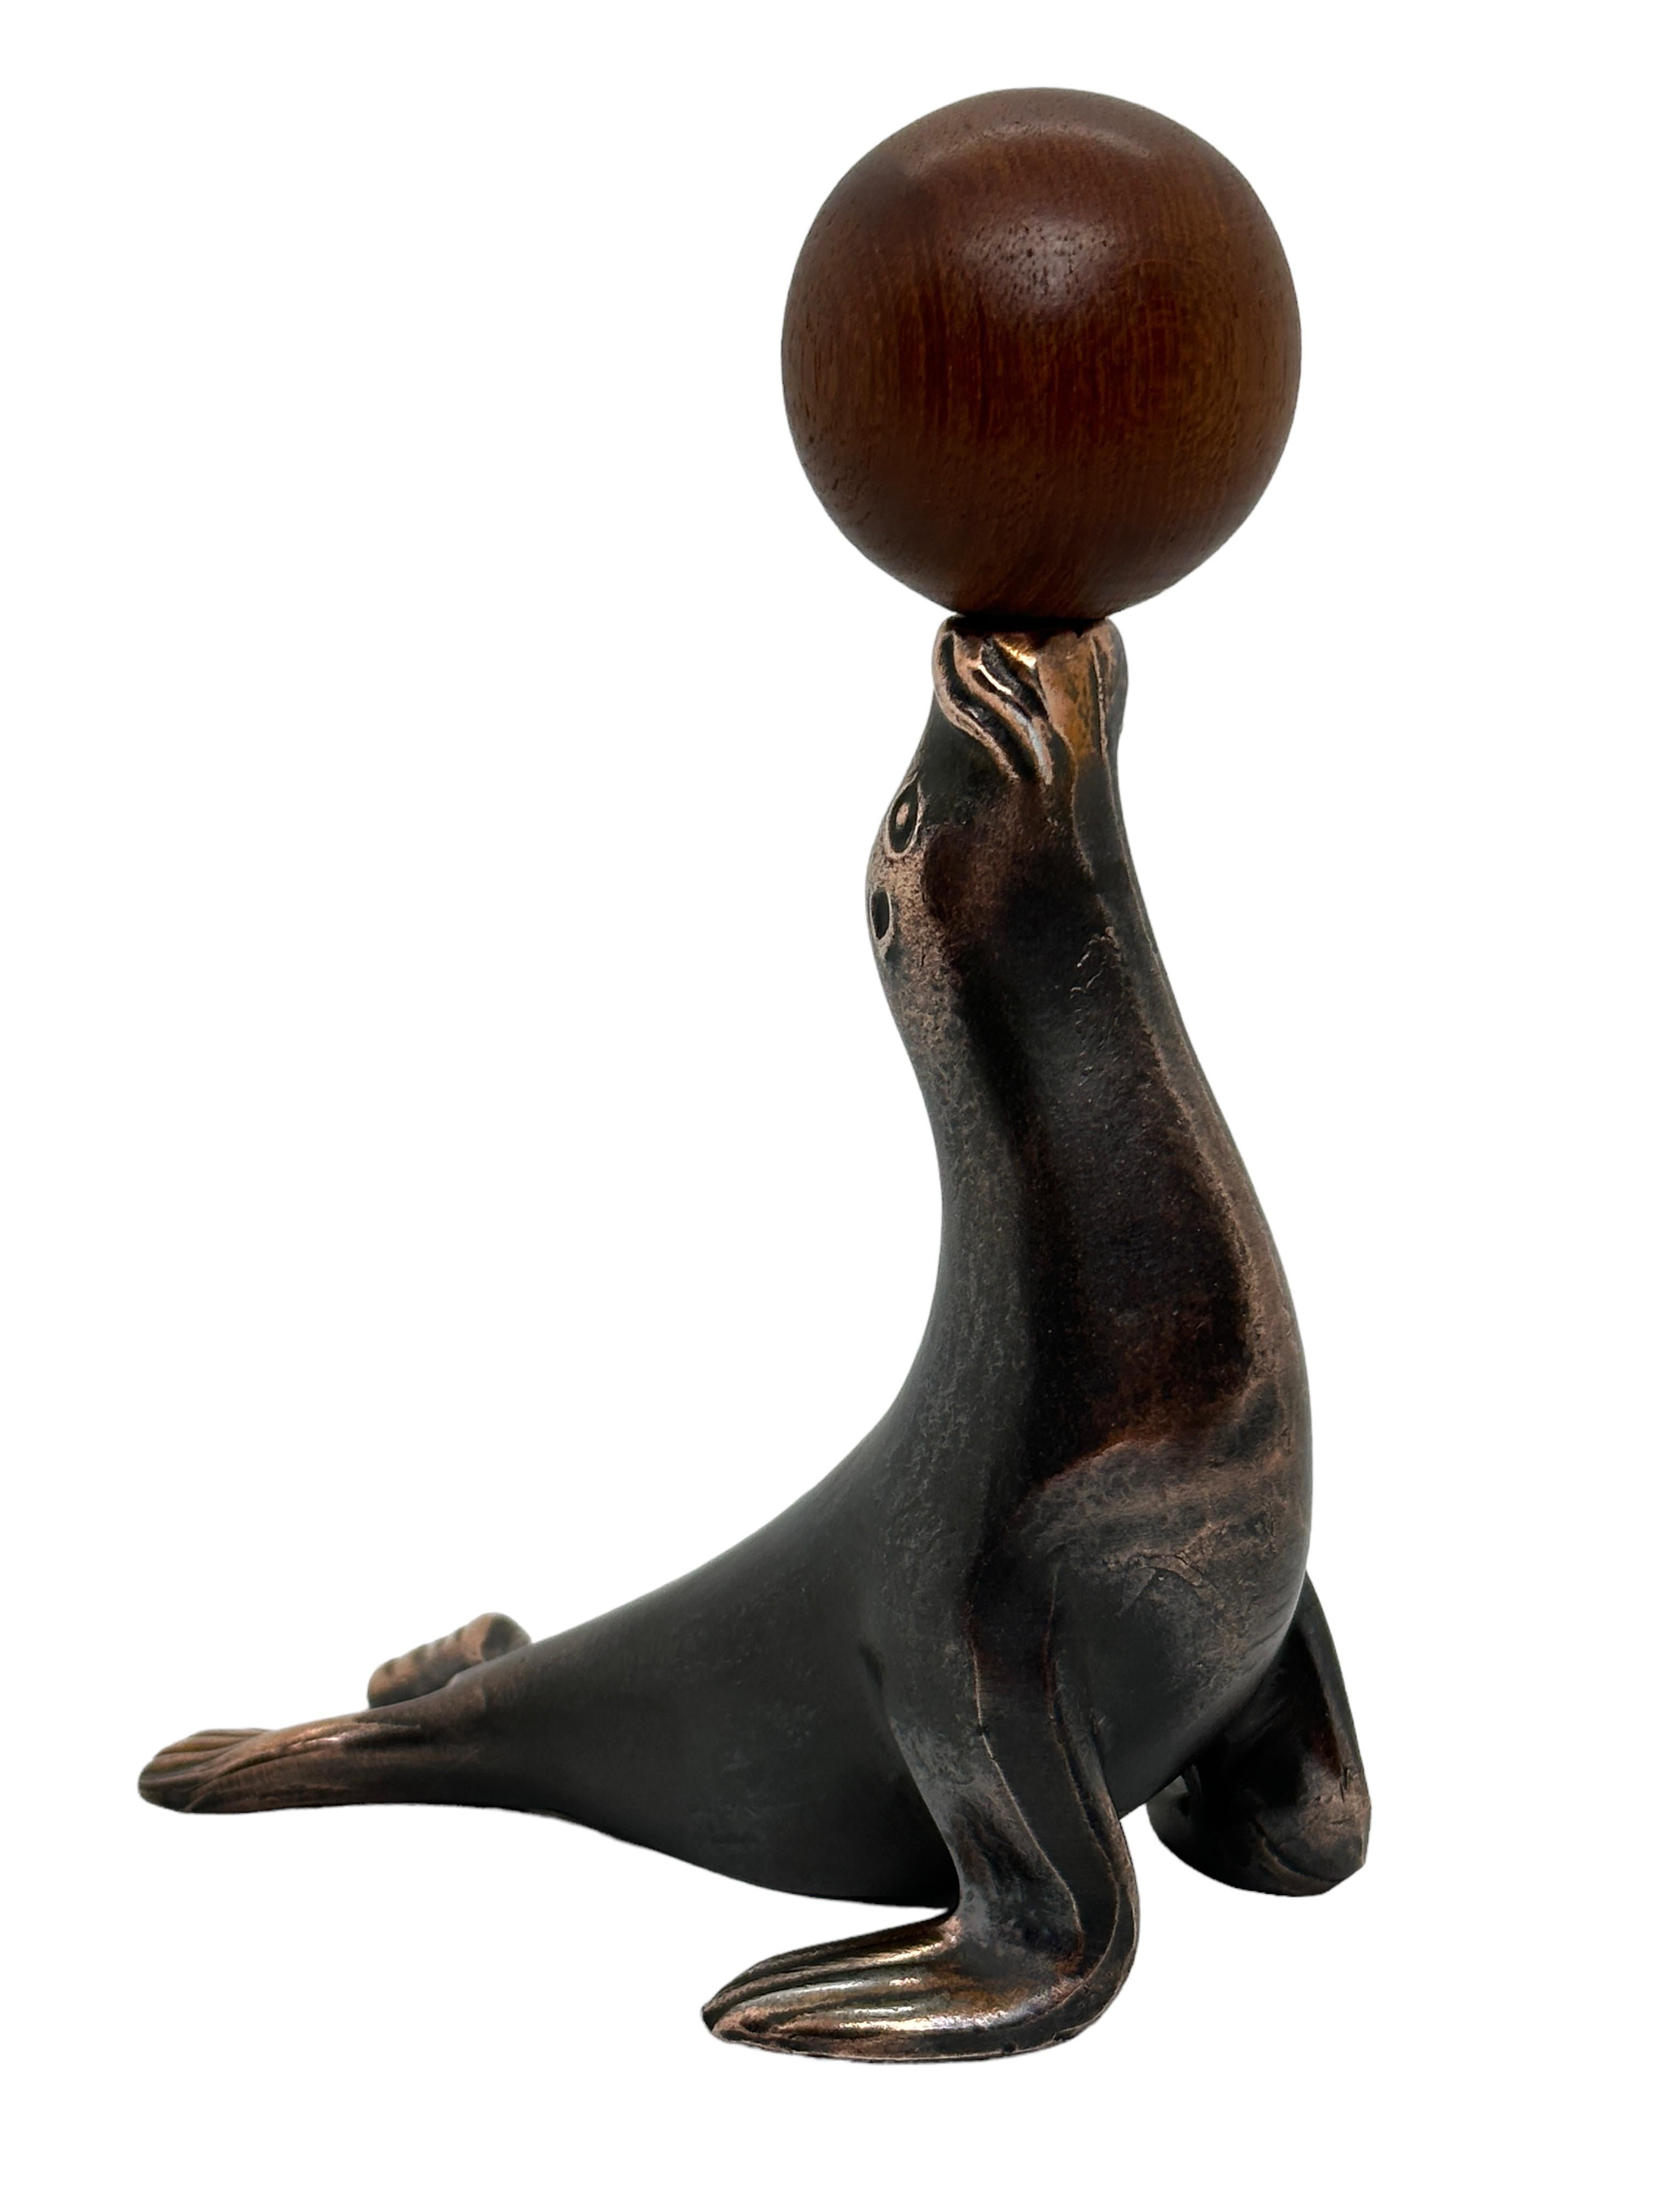 Klassischer österreichischer Korkenzieher der frühen 1960er Jahre oder älter in Form eines Seelöwen oder einer Robbe, die eine Kugel balanciert. Die Kugel ist gleichzeitig der Griff für den Korkenzieher. Eine schöne Ergänzung für Ihr Zimmer oder